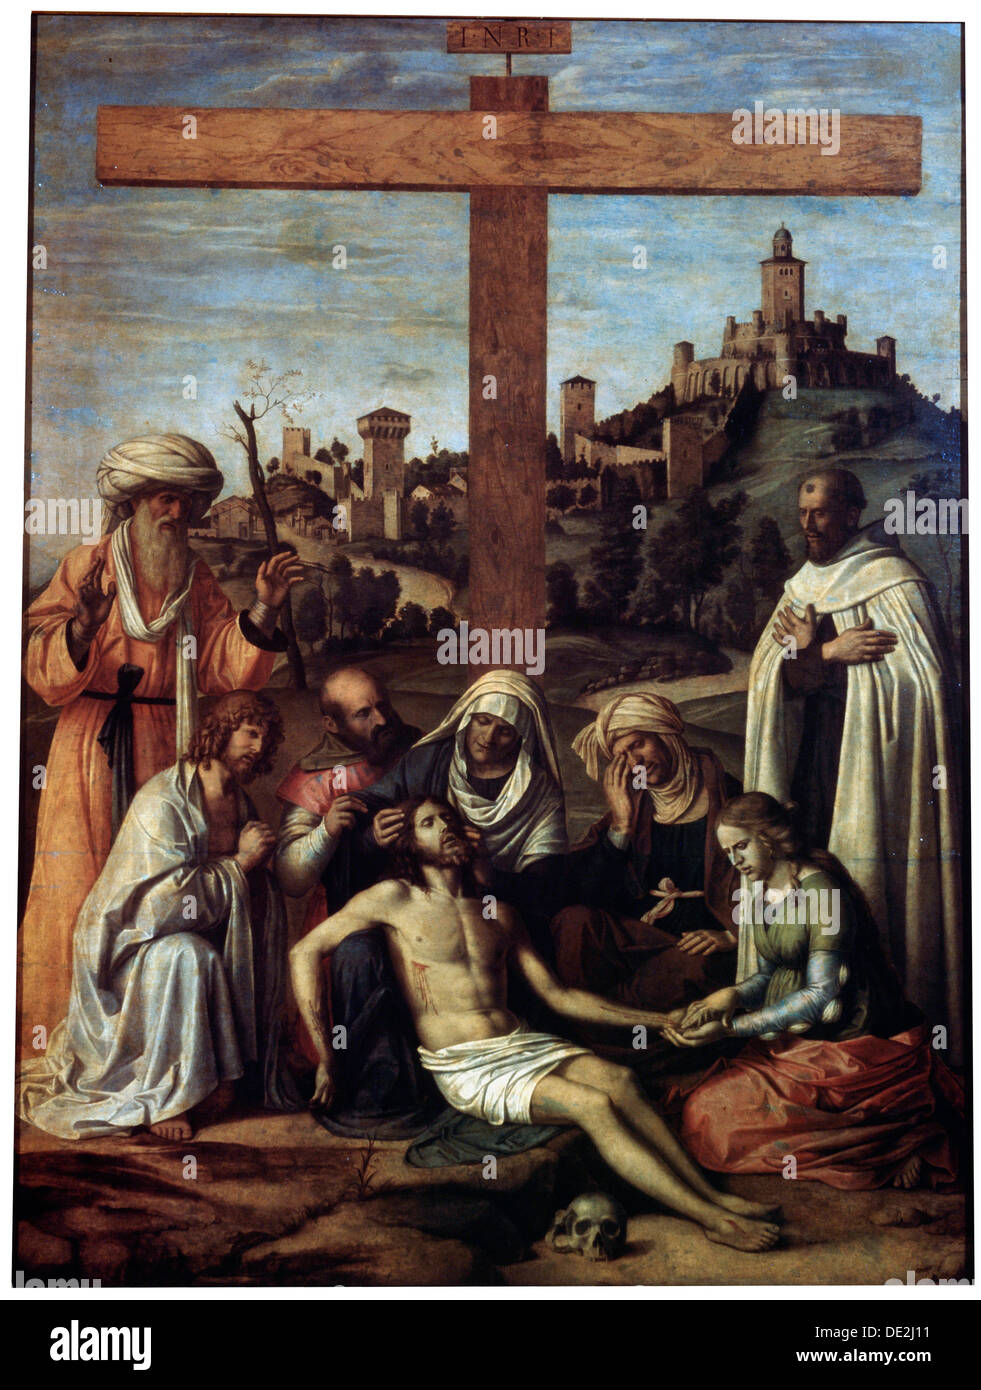 'The Lamentation over Christ with a Carmelite Monk', c1510. Creator: Giovanni Battista Cima da Conegliano. Stock Photo